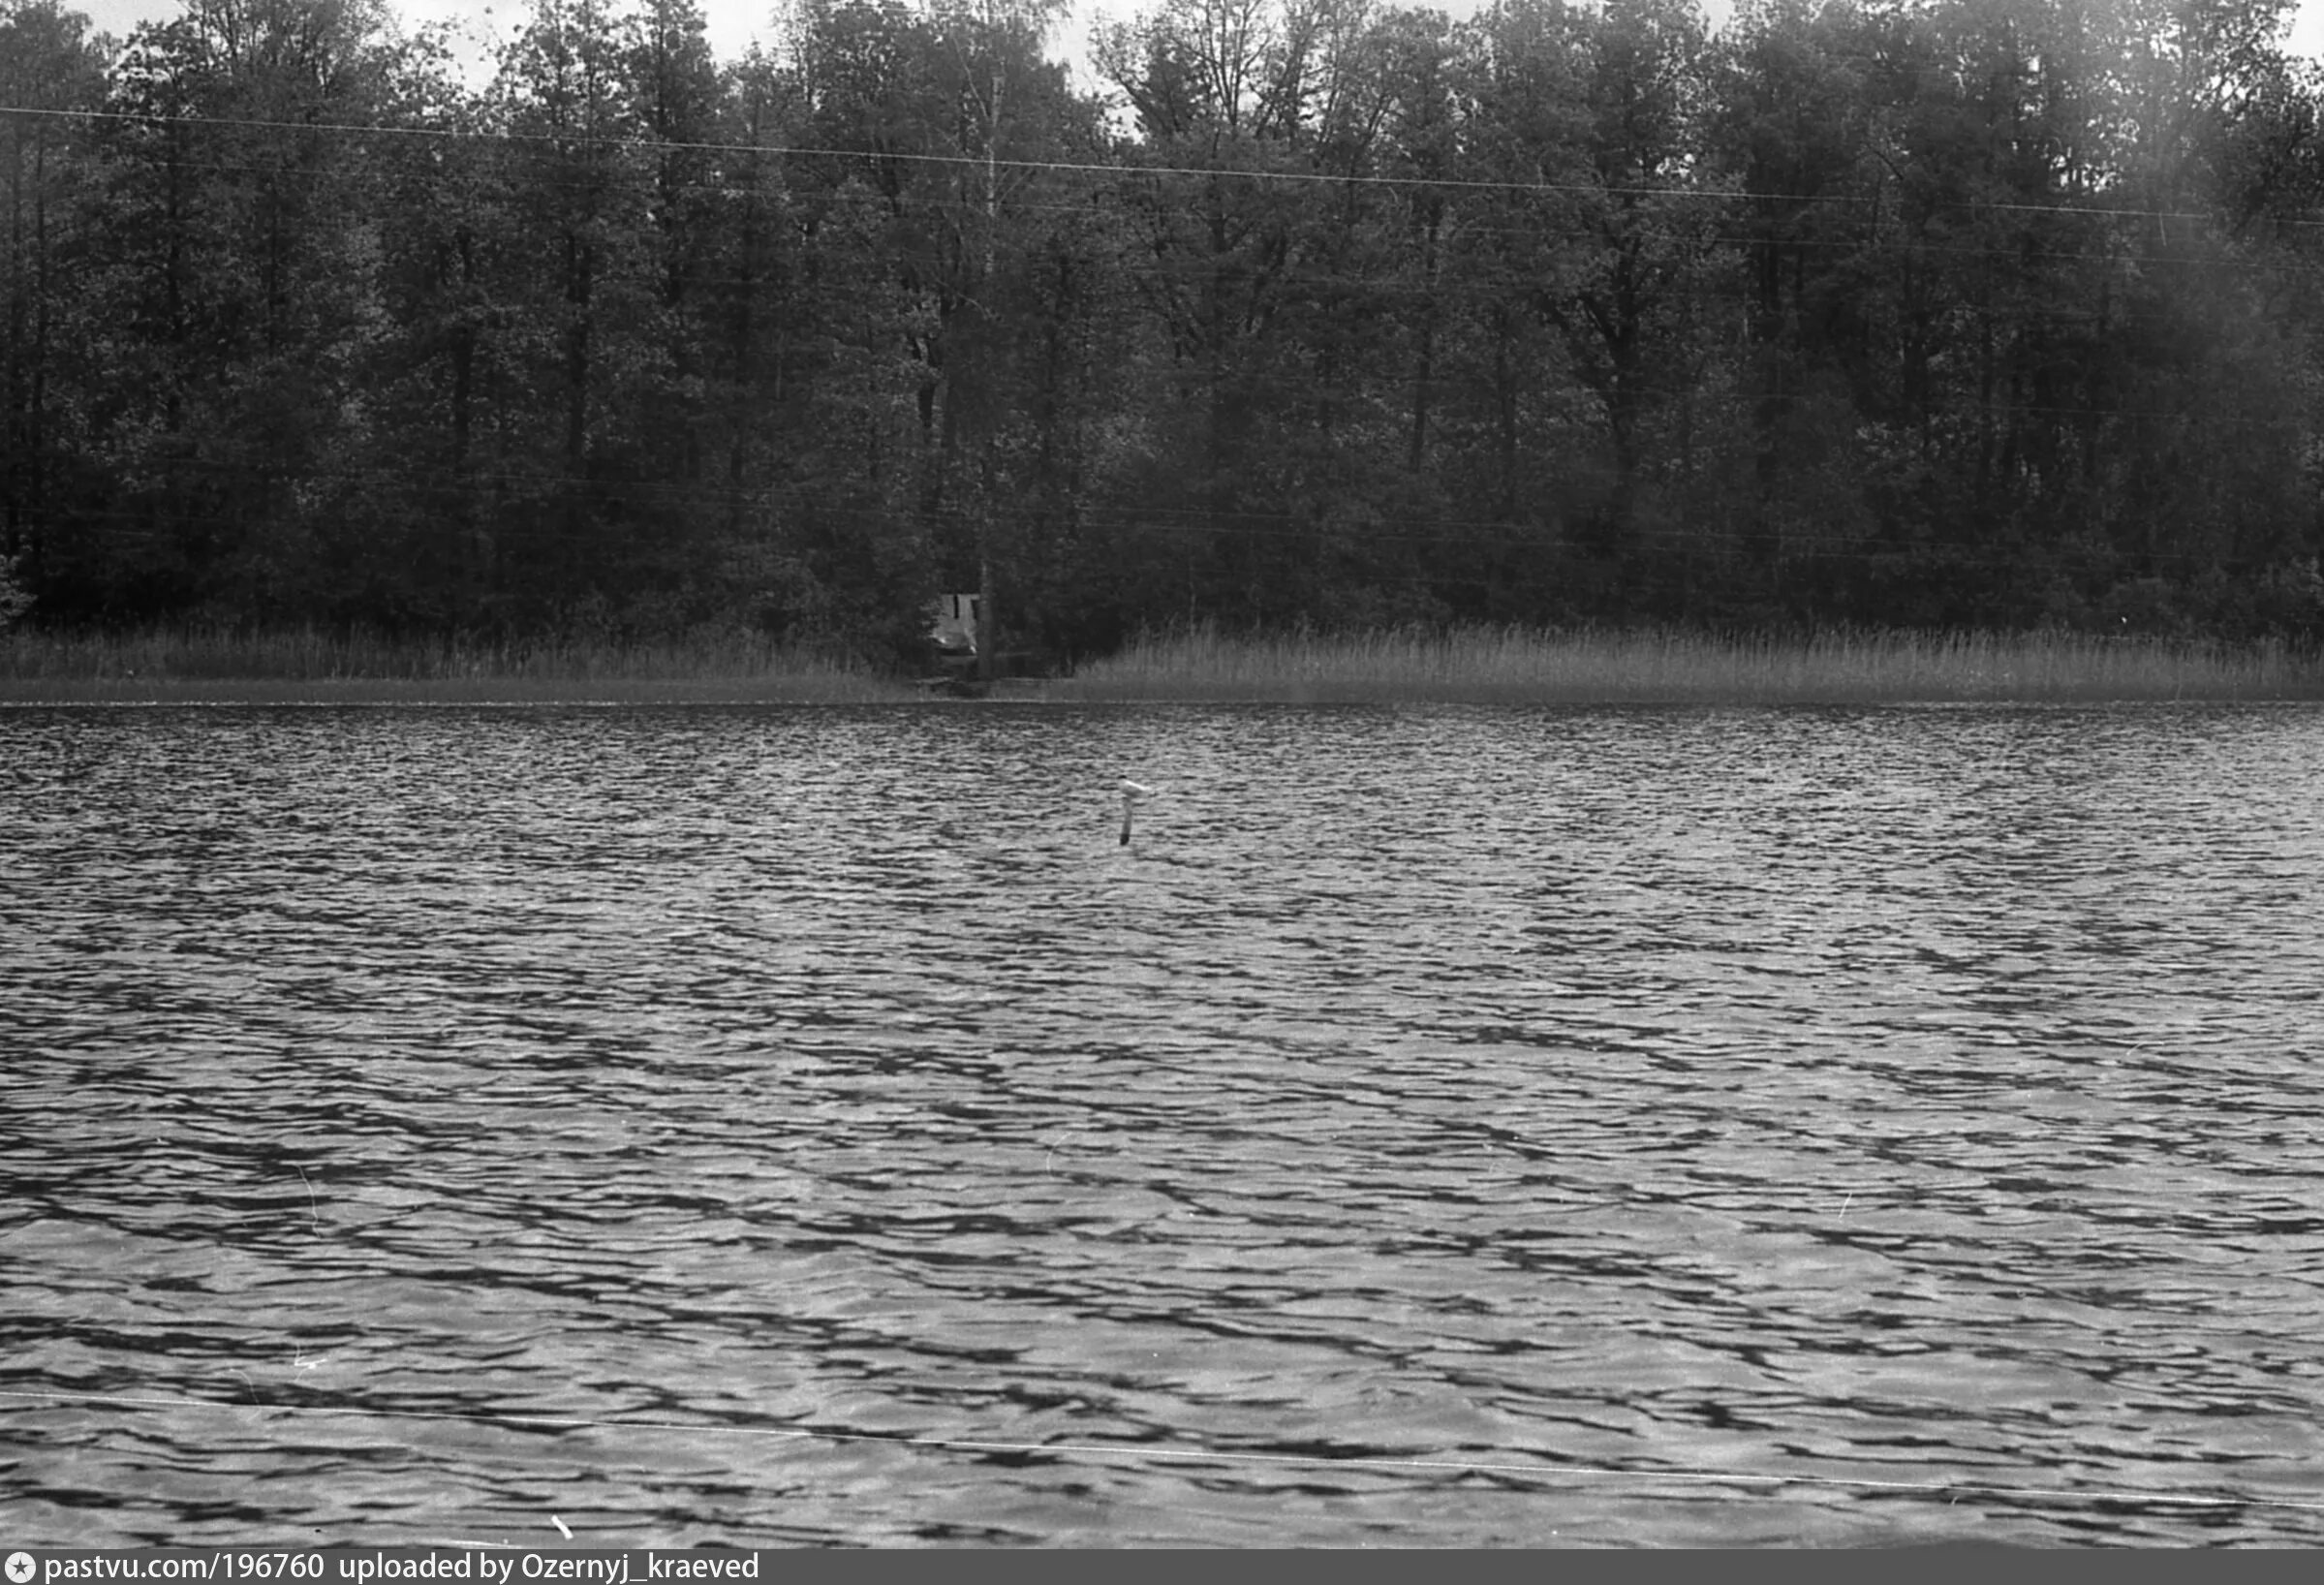 Озеро глубокое Рузский район. Заказник озеро глубокое Рузский район. Озеро глубокое Московская область Рузский район. Озеро глубокое Рузский район рыбалка.